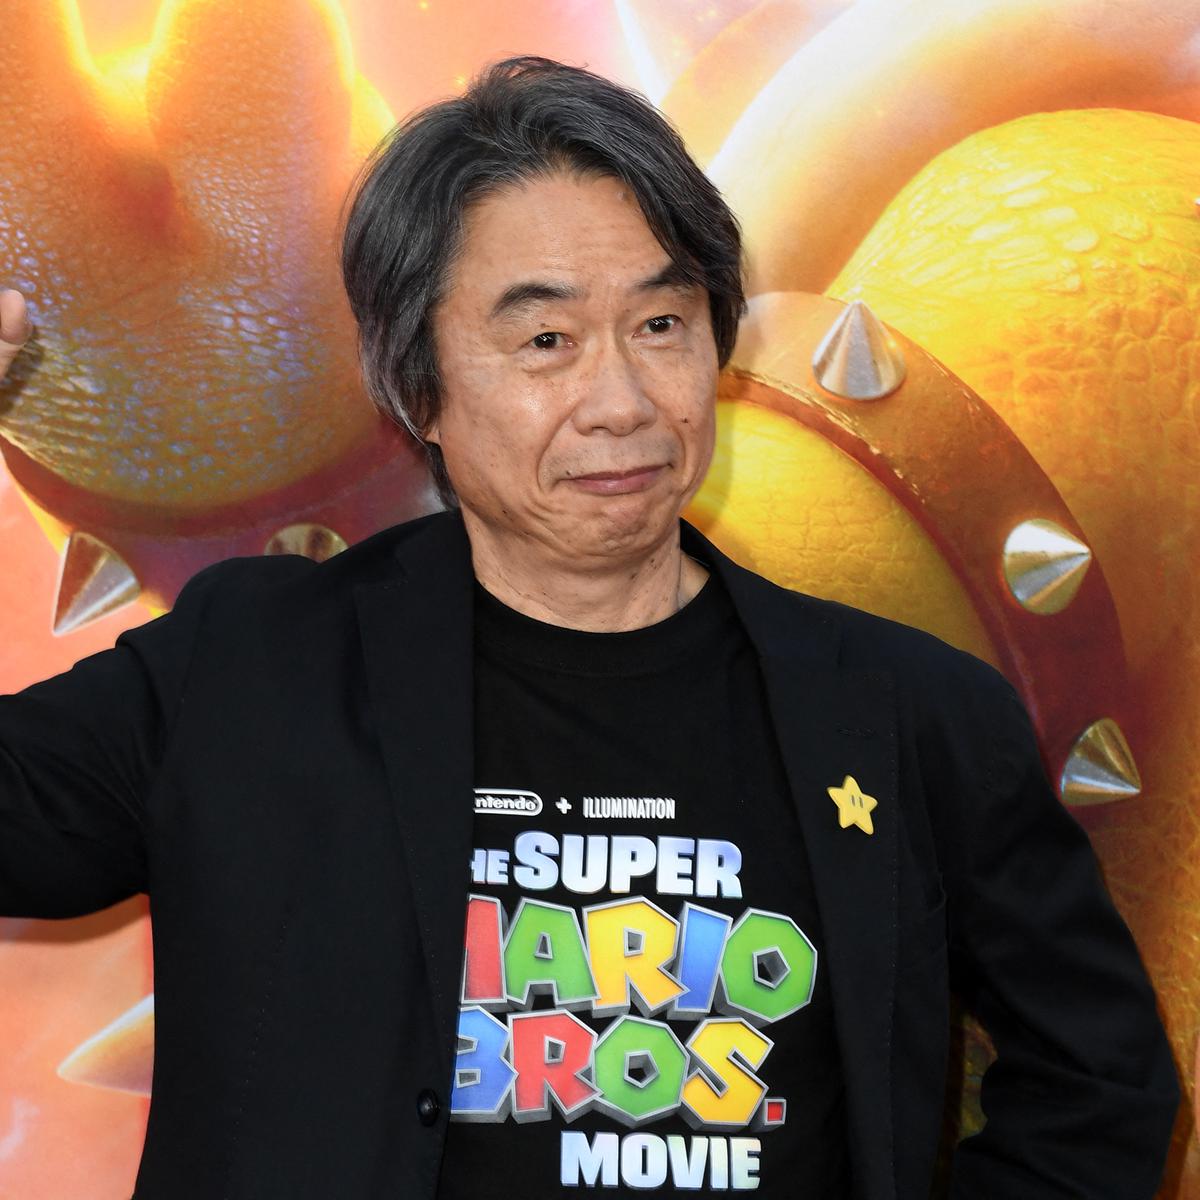 Cuánto dinero tiene Shigeru Miyamoto, padre de Mario Bross y el